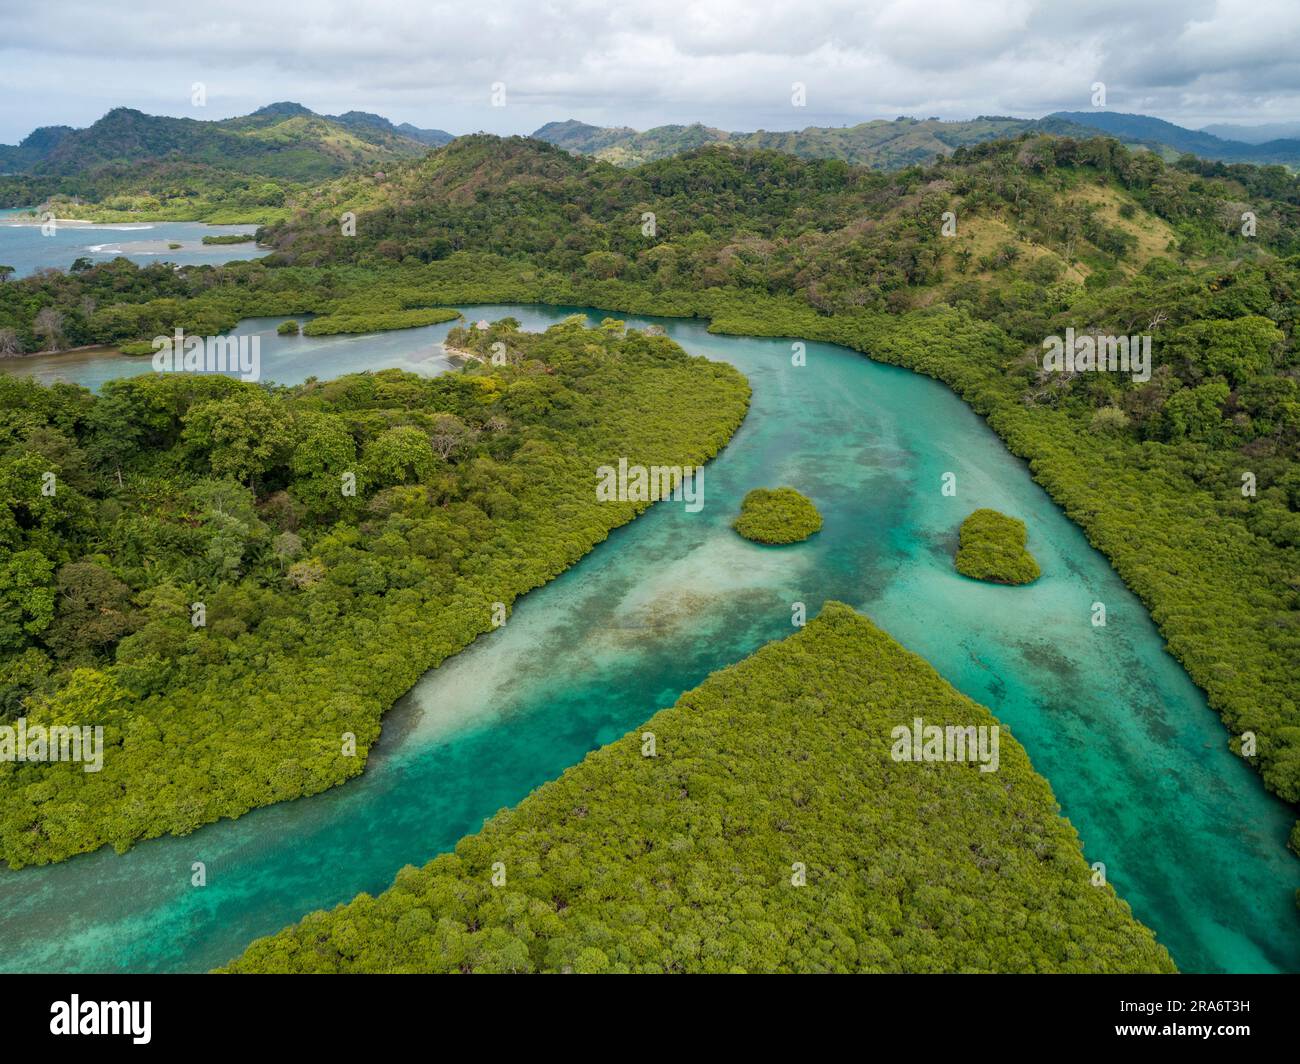 Aerial photograph of mangroves and sandbars along Venas Azules area, Portobelo, Panama - stock photo Stock Photo